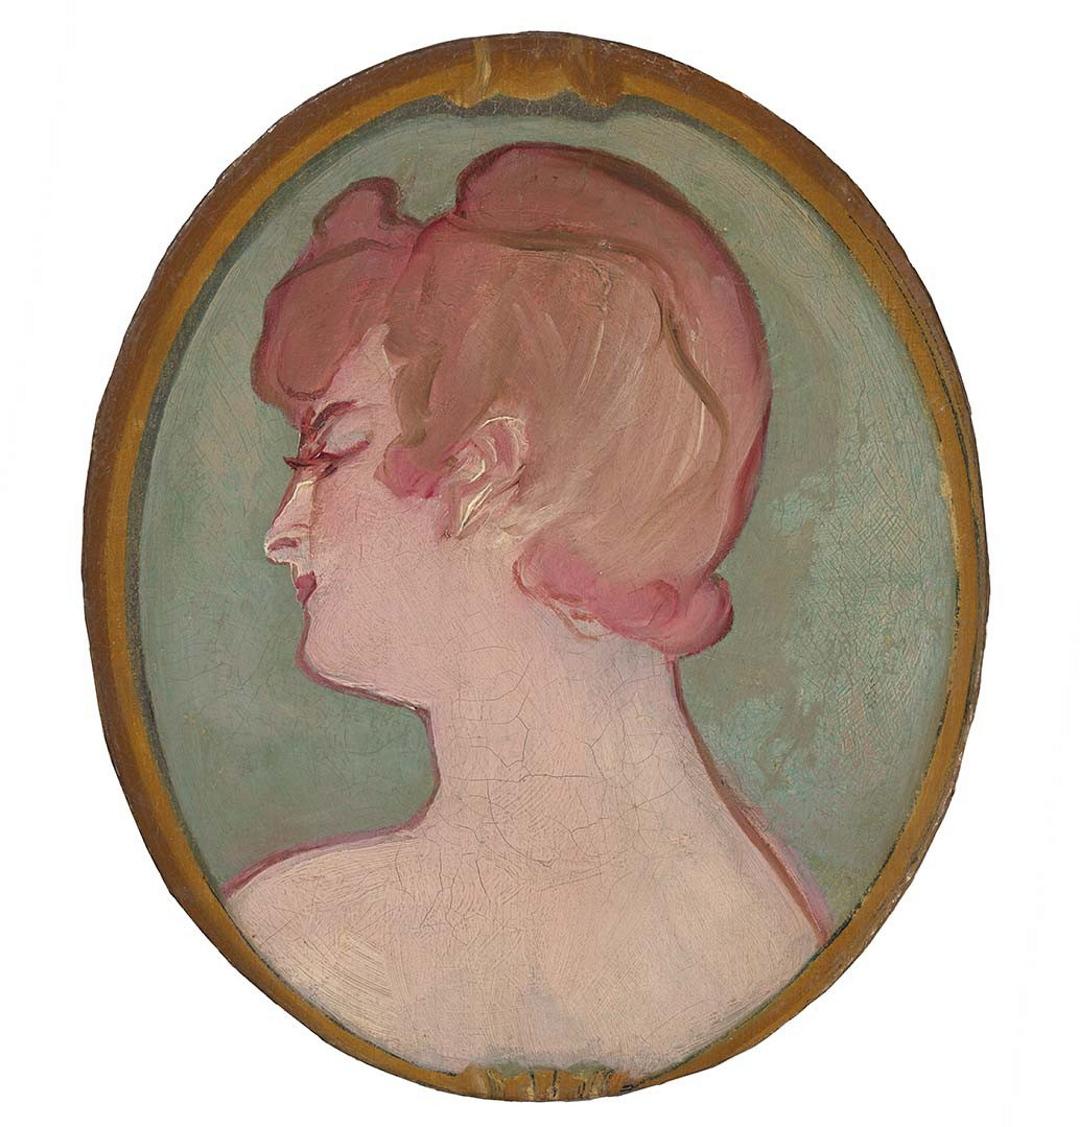 Slider: UV, Tete de fille (Head of a girl) 1892 